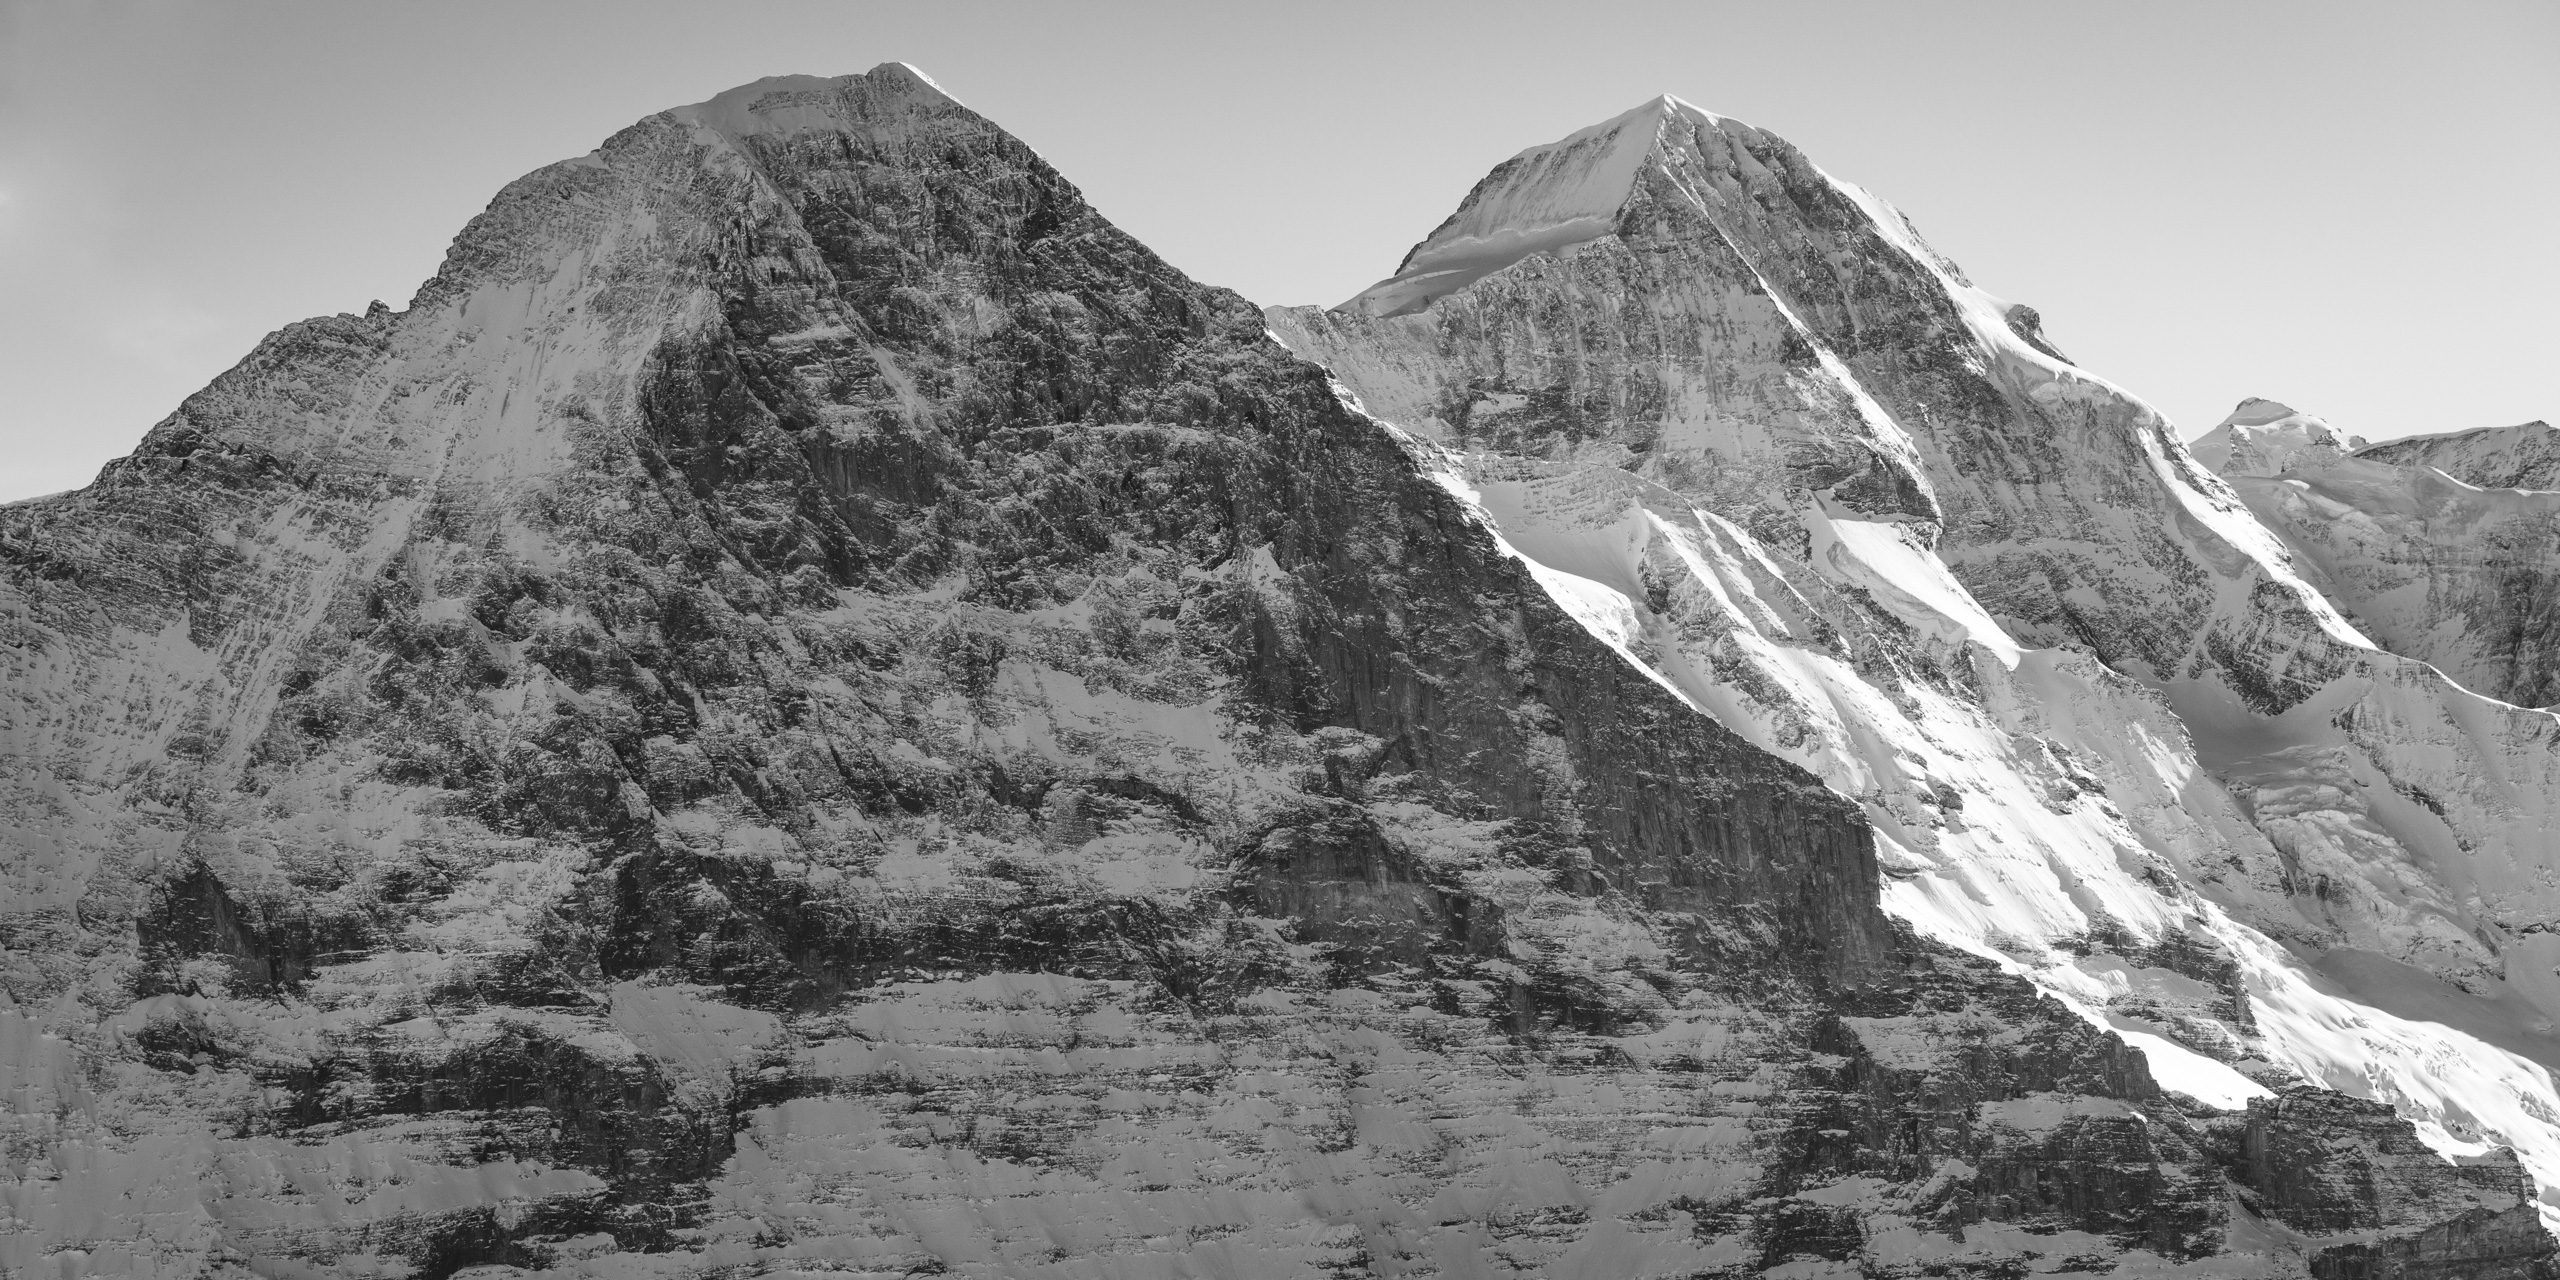 vue panoramique montagne Eiger face nord - Monch - images de neige en montagne